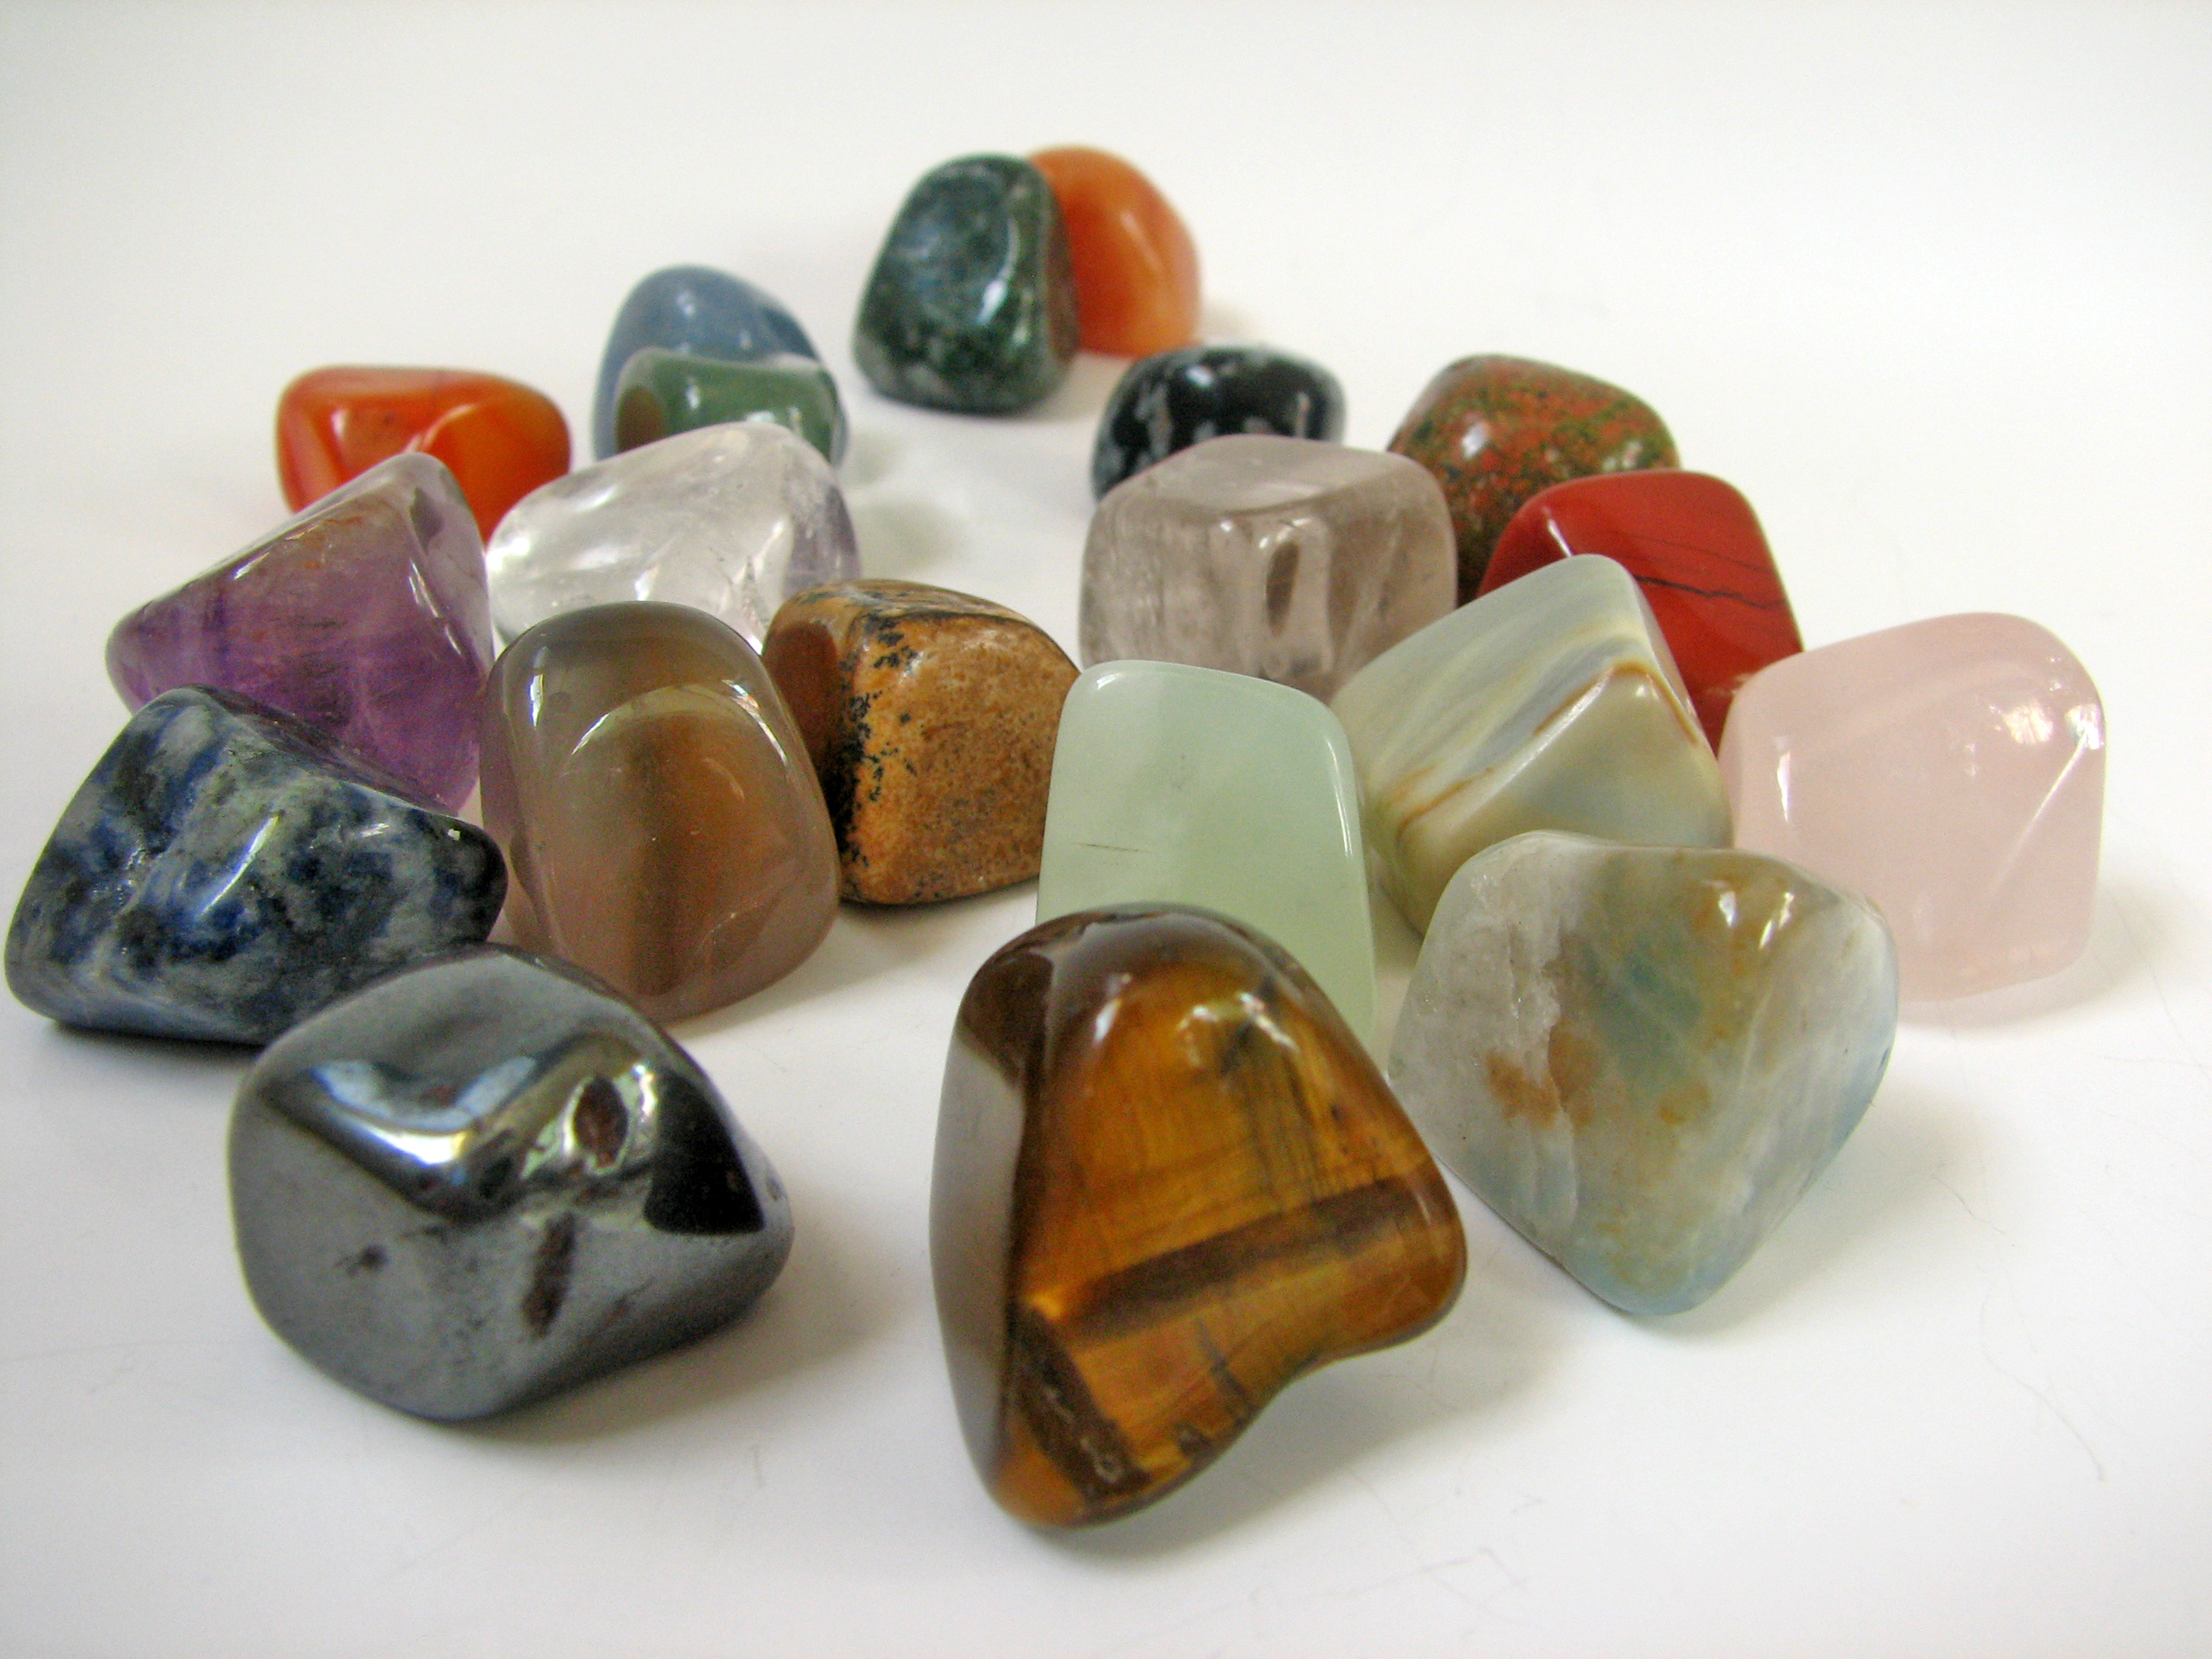 Precious stones. Самоцветы поделочные камни. Изделия с полудрагоценными камнями. Поделочные камушки. Ювелирно поделочные камни.